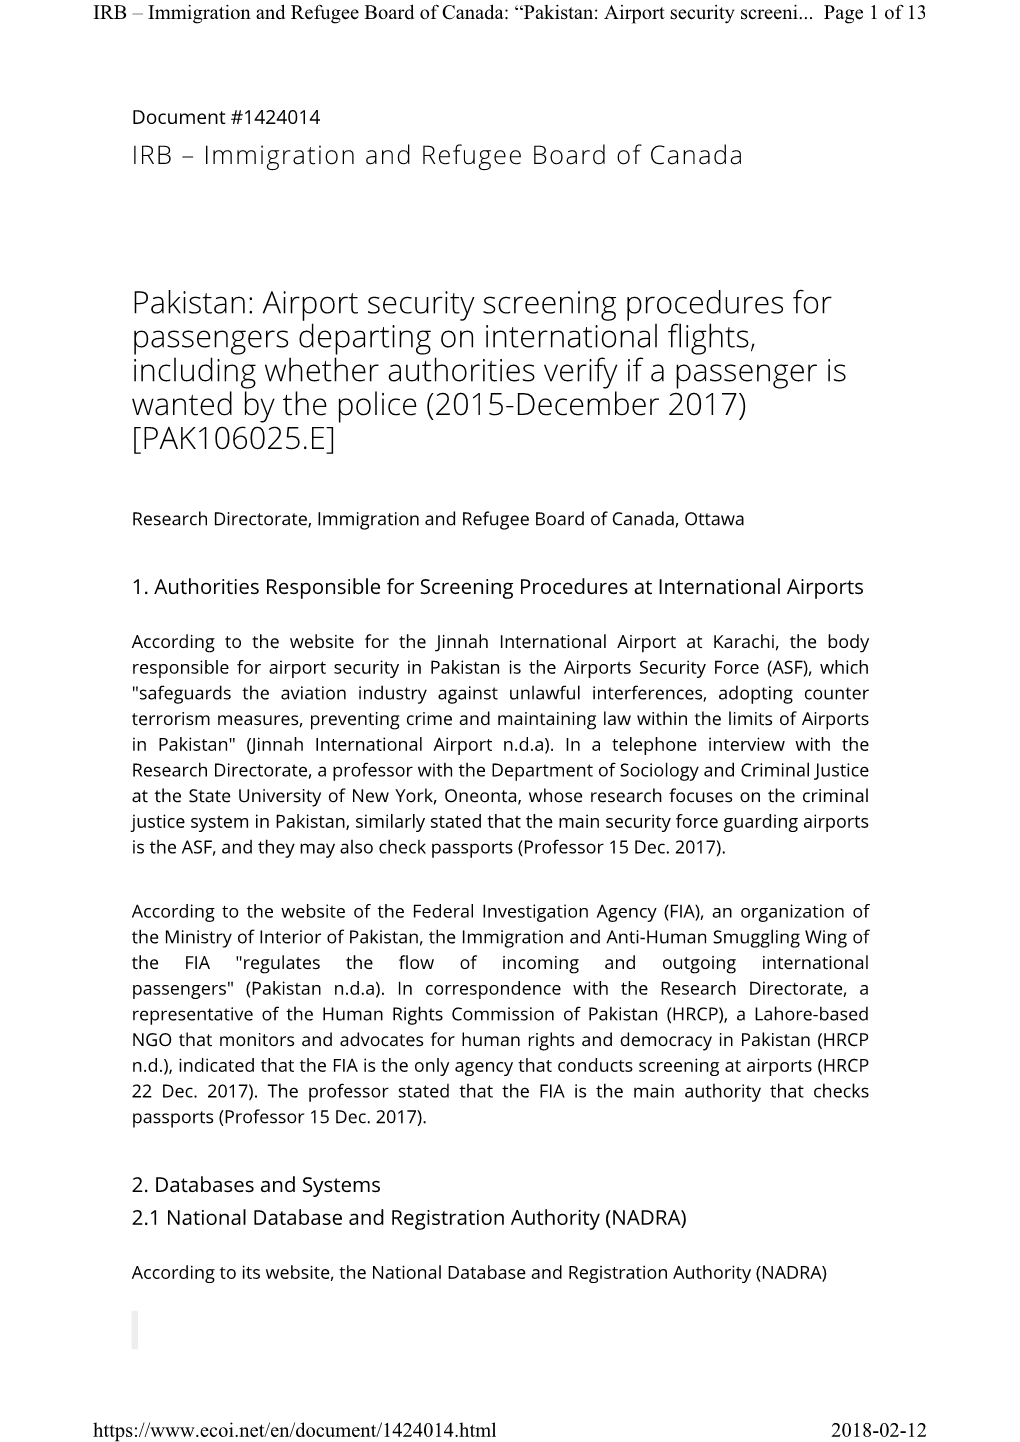 Pakistan: Airport Security Screening Procedures for Passengers